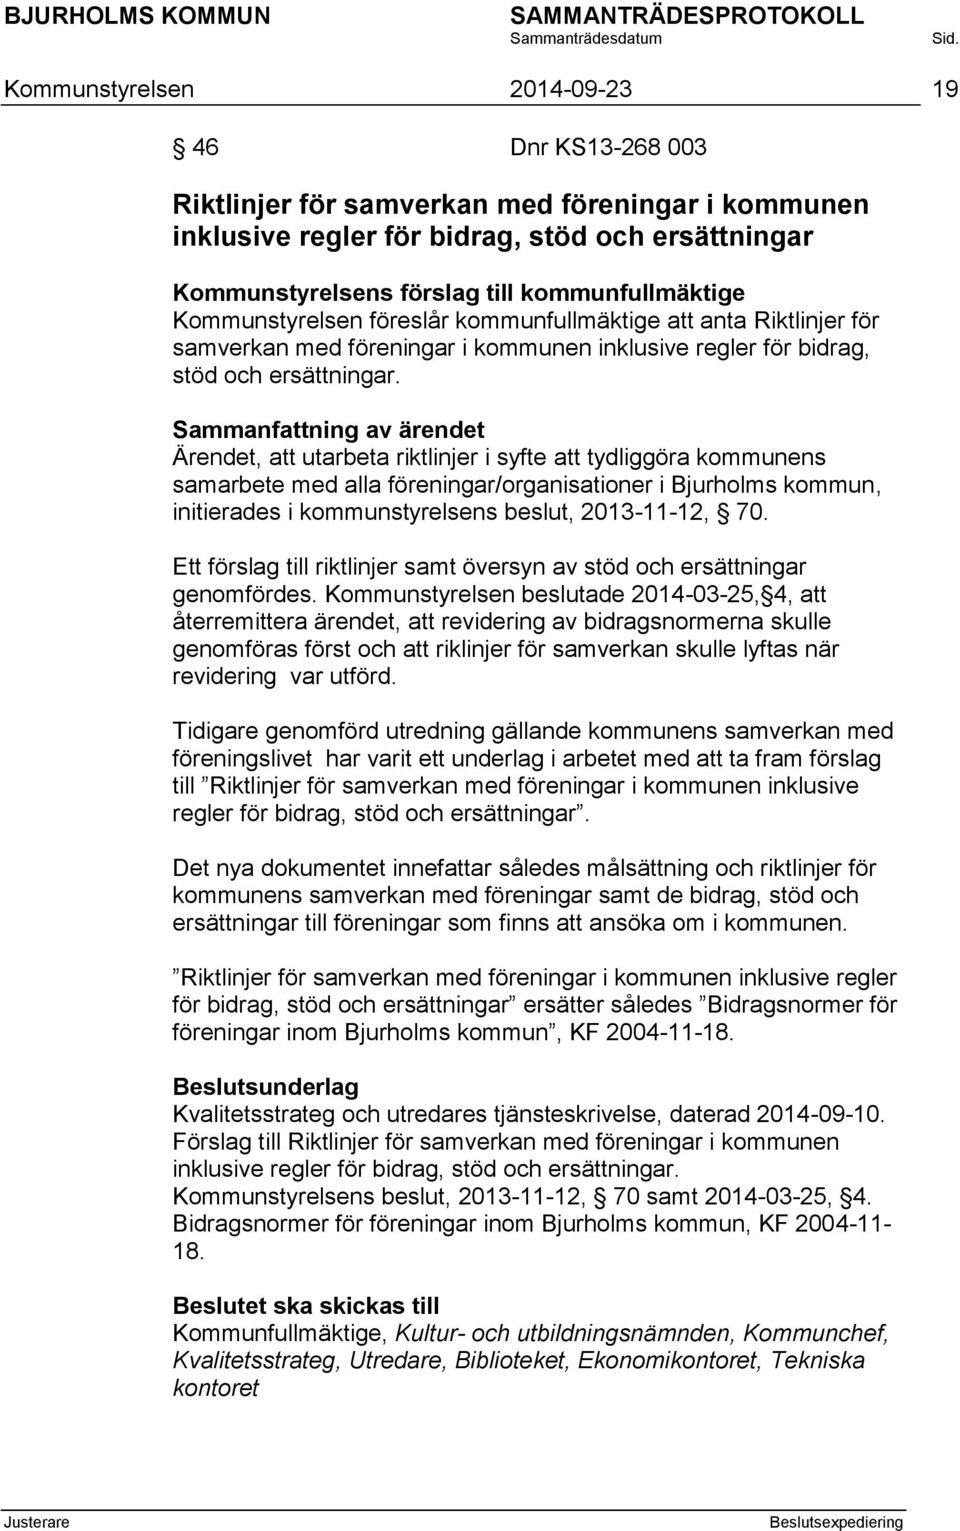 Ärendet, att utarbeta riktlinjer i syfte att tydliggöra kommunens samarbete med alla föreningar/organisationer i Bjurholms kommun, initierades i kommunstyrelsens beslut, 2013-11-12, 70.